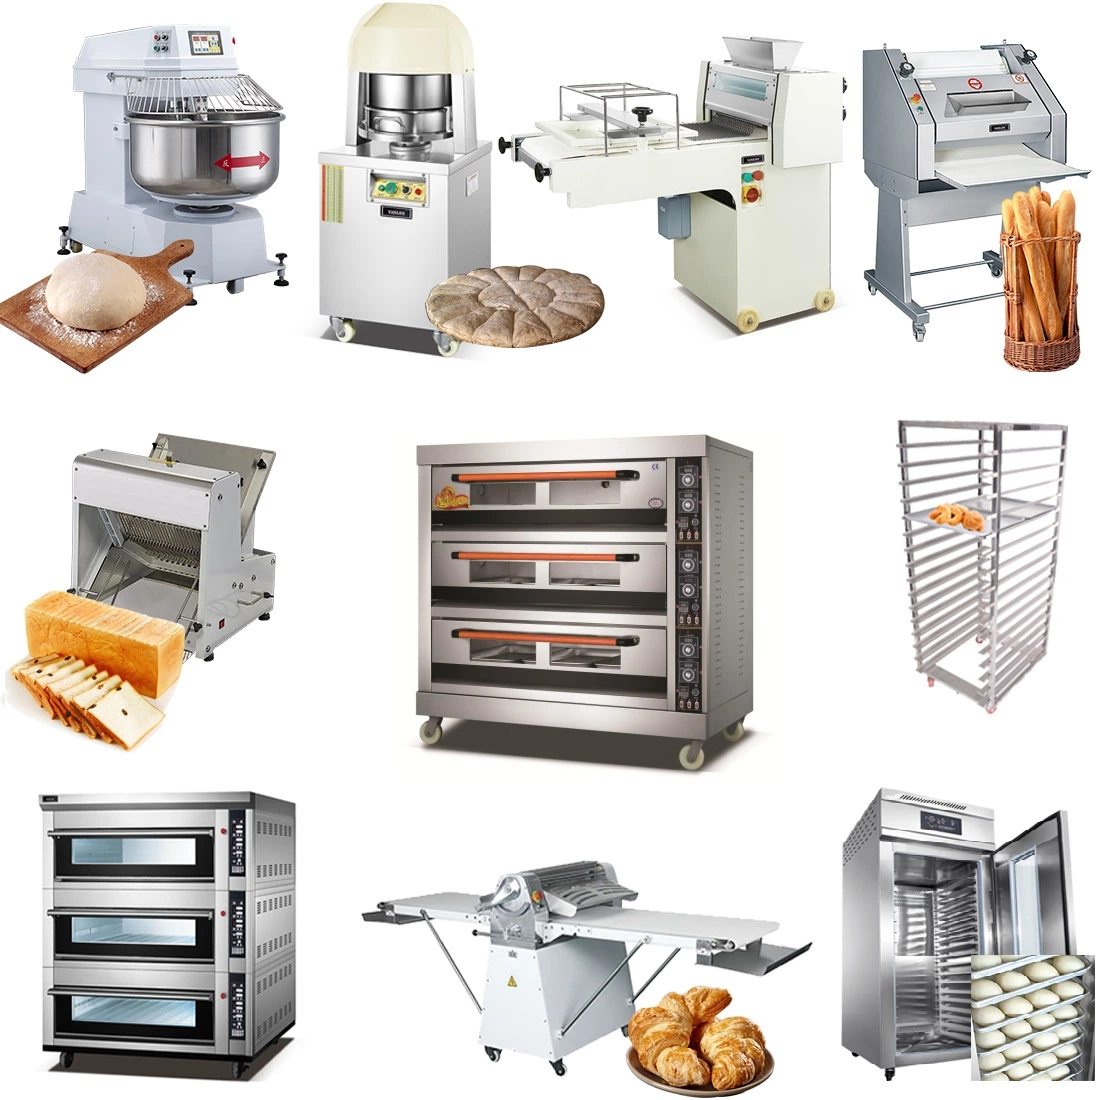 Panadería industrial Panificadora Pan de la línea de producción de equipos de cocción de pan